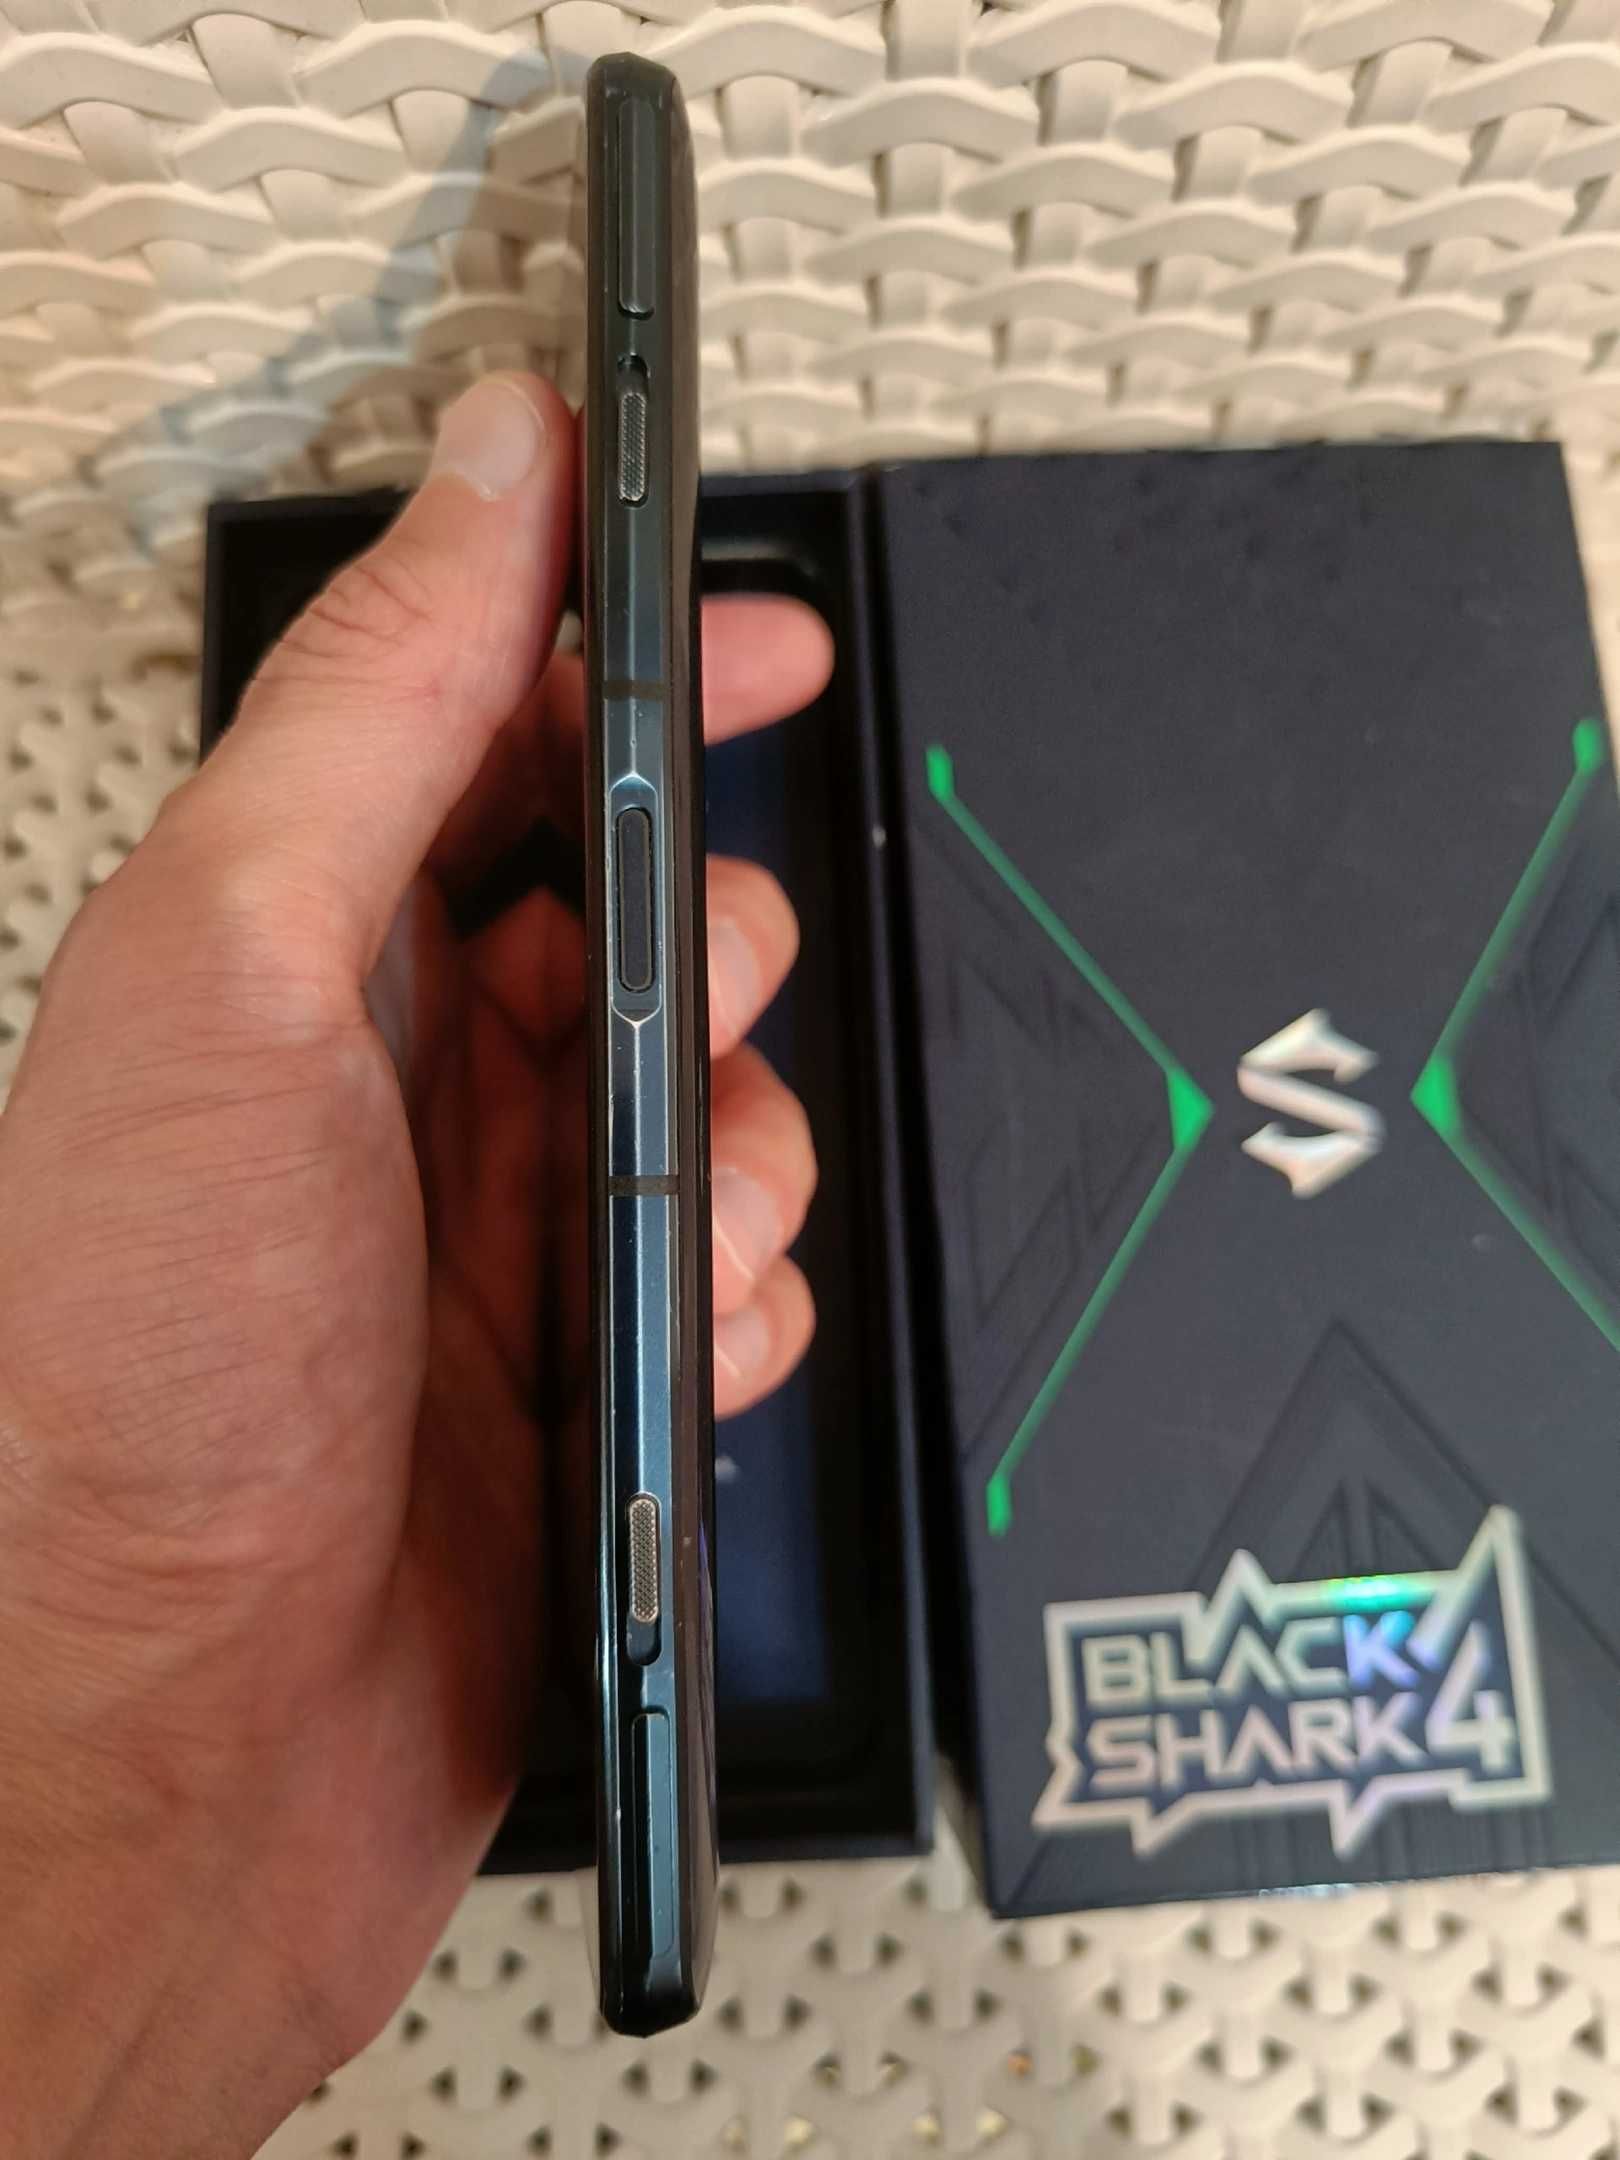 Black Shark 4 5g Игровой телефон Xiaomi Блек Шарк